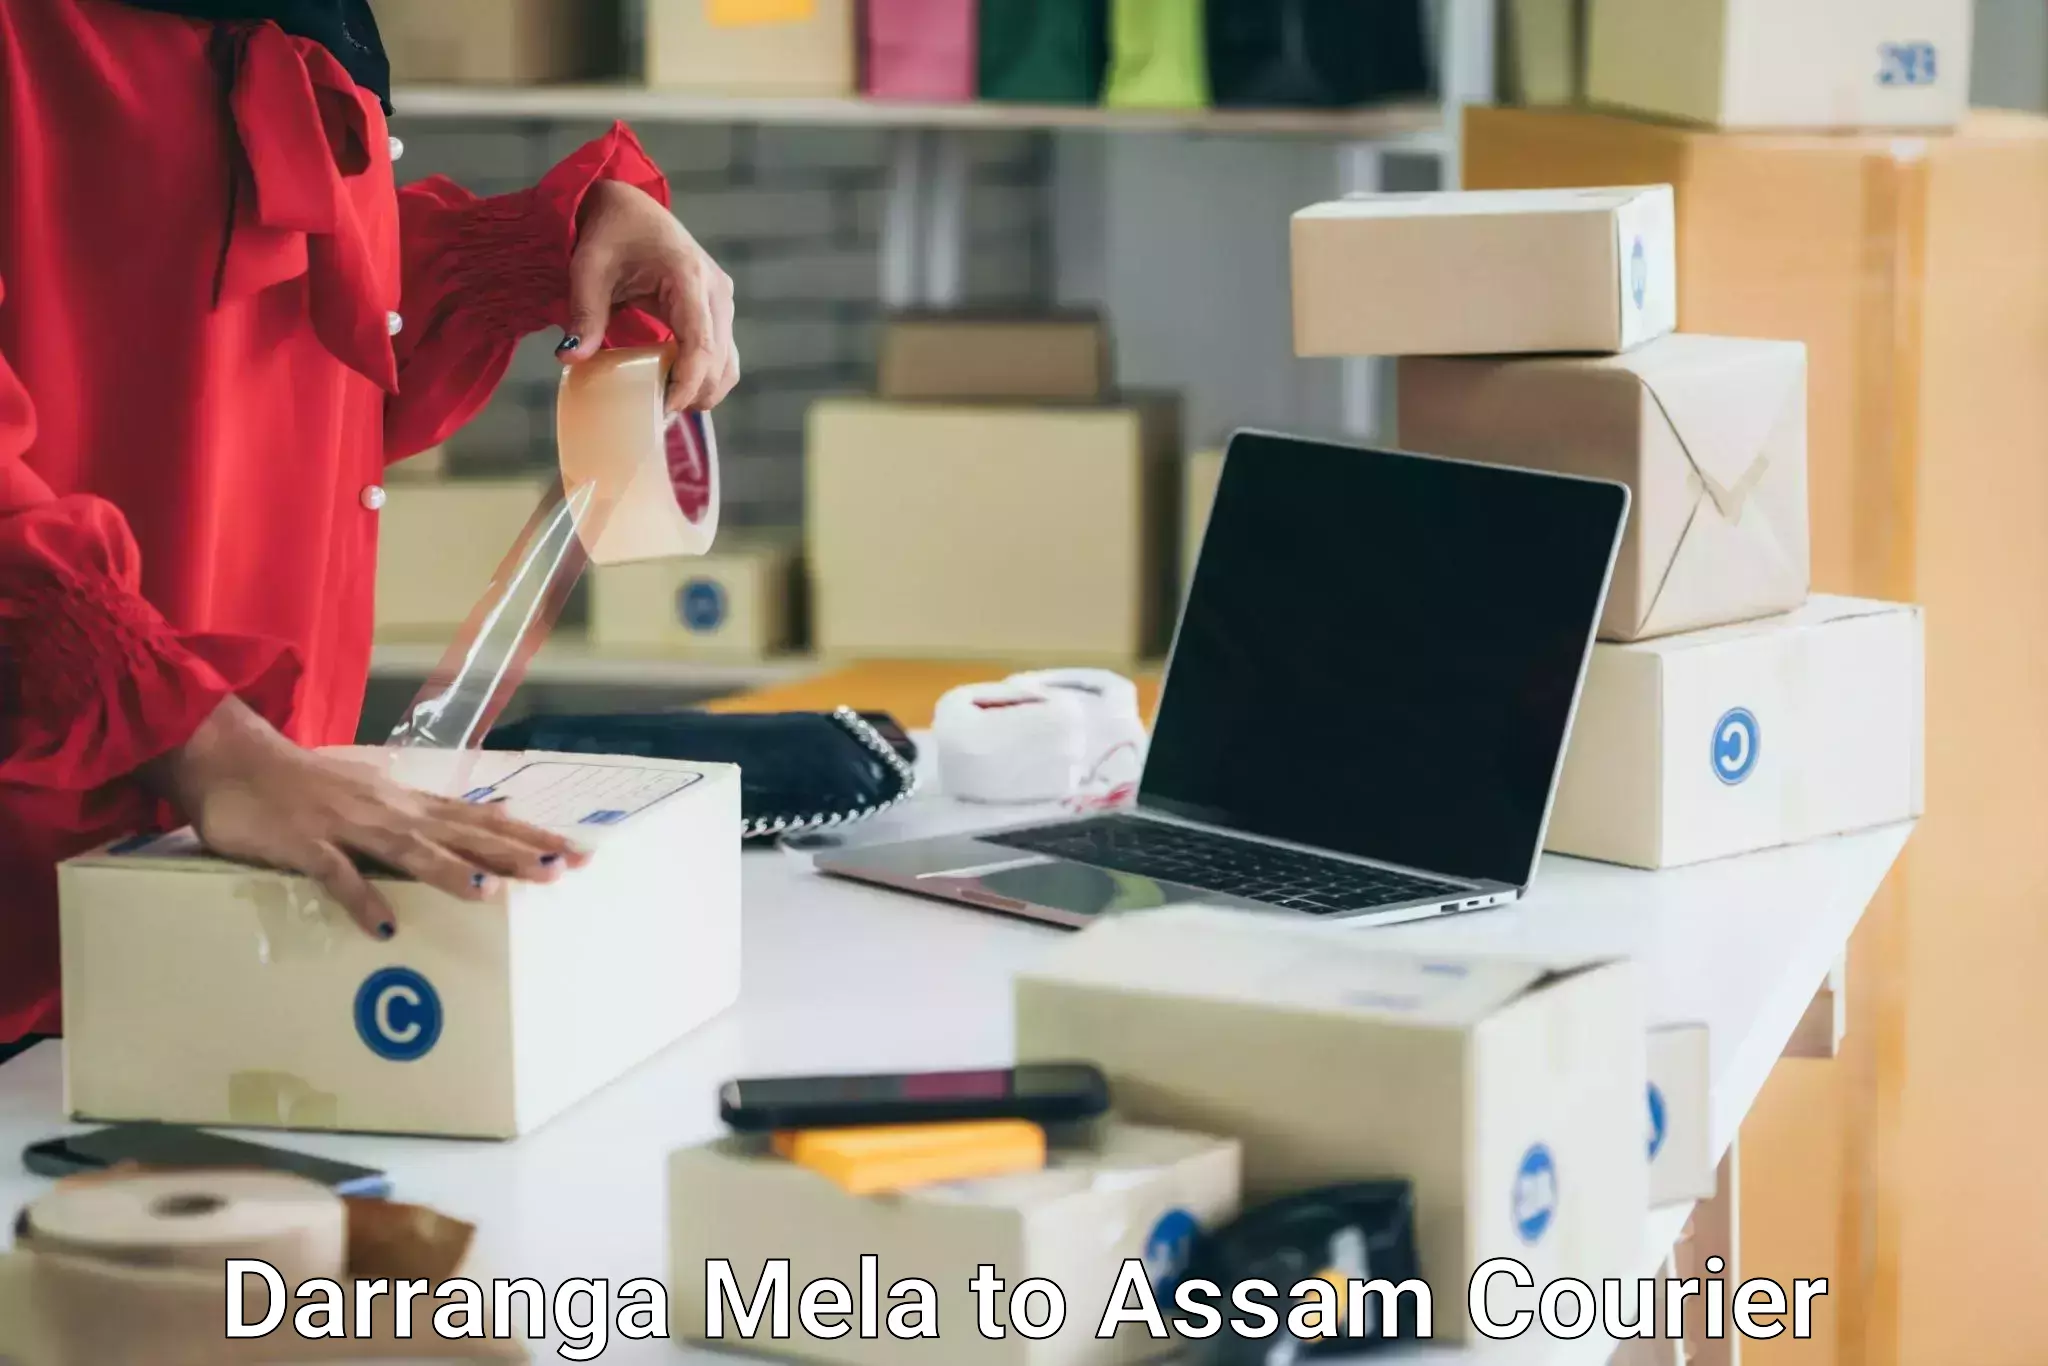 Quality moving company Darranga Mela to Assam